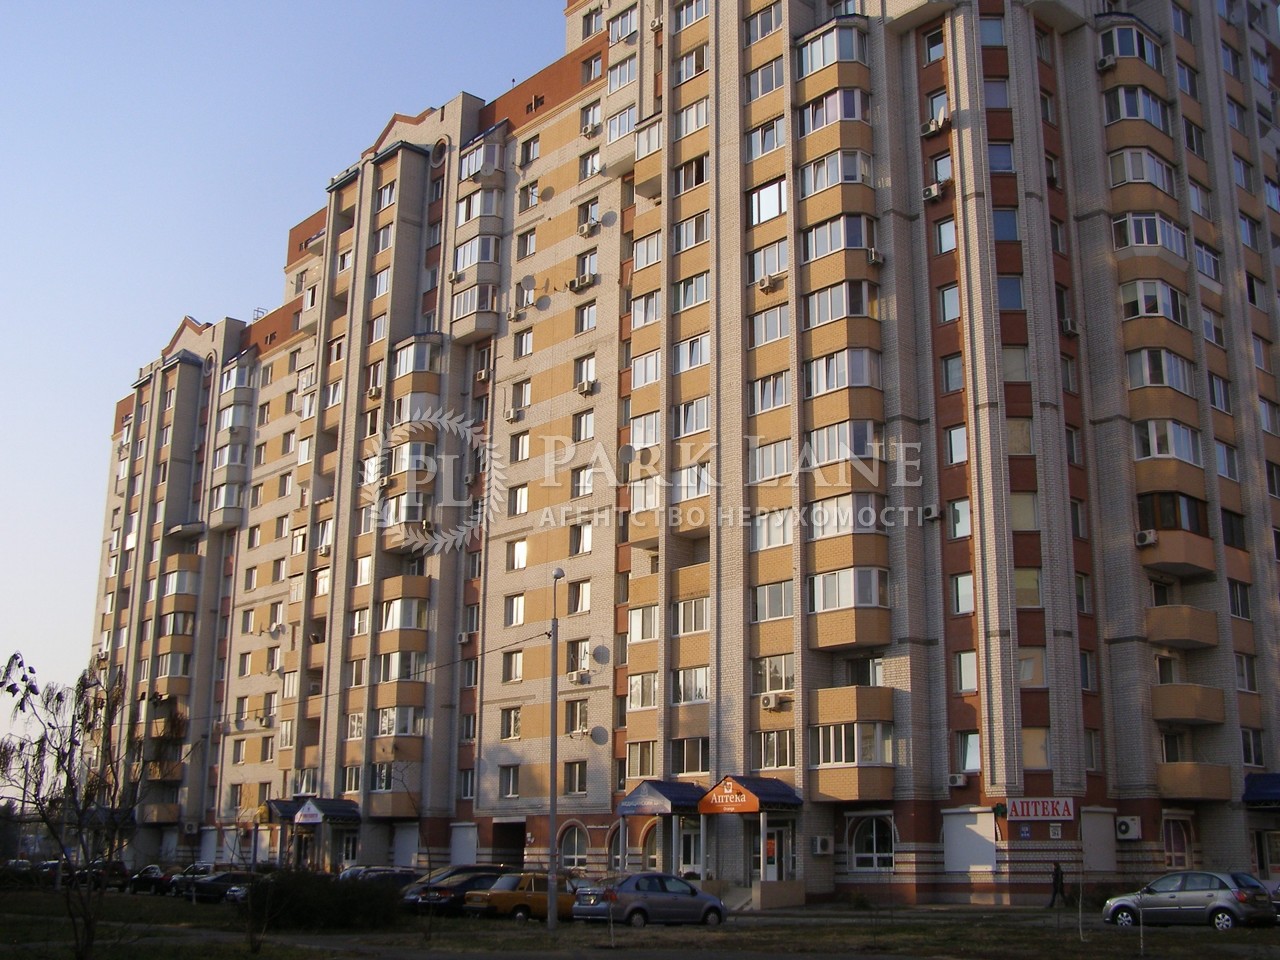 Квартира G-387192, Алматинская (Алма-Атинская), 39а, Киев - Фото 2